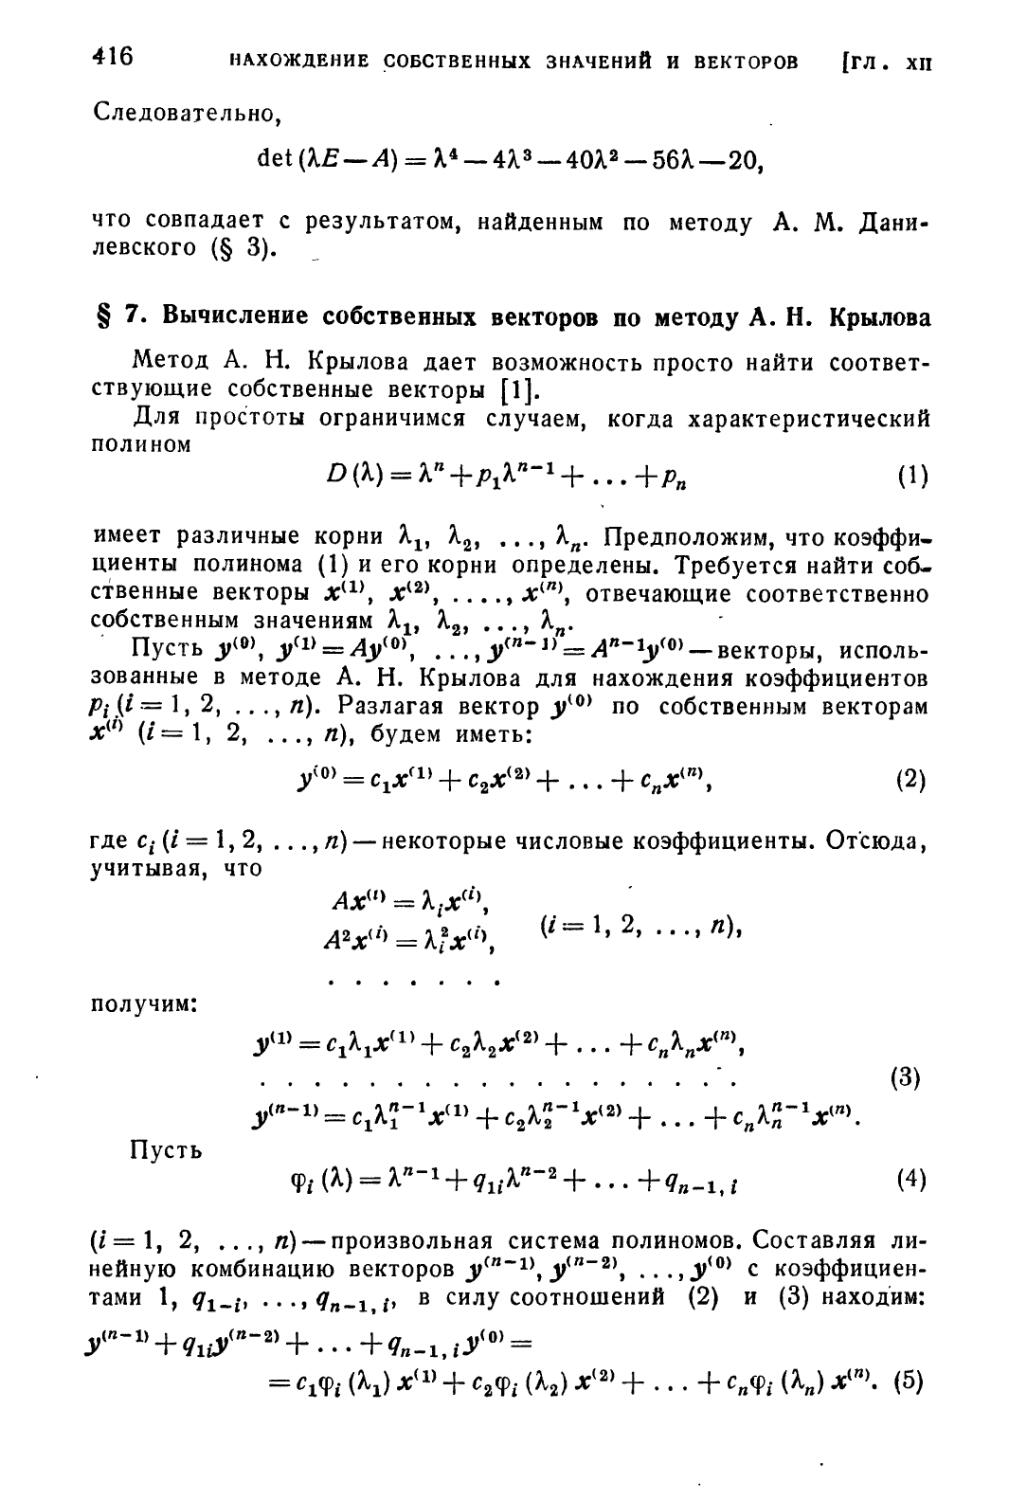 § 7. Вычисление собственных векторов по методу А.Н. Крылова